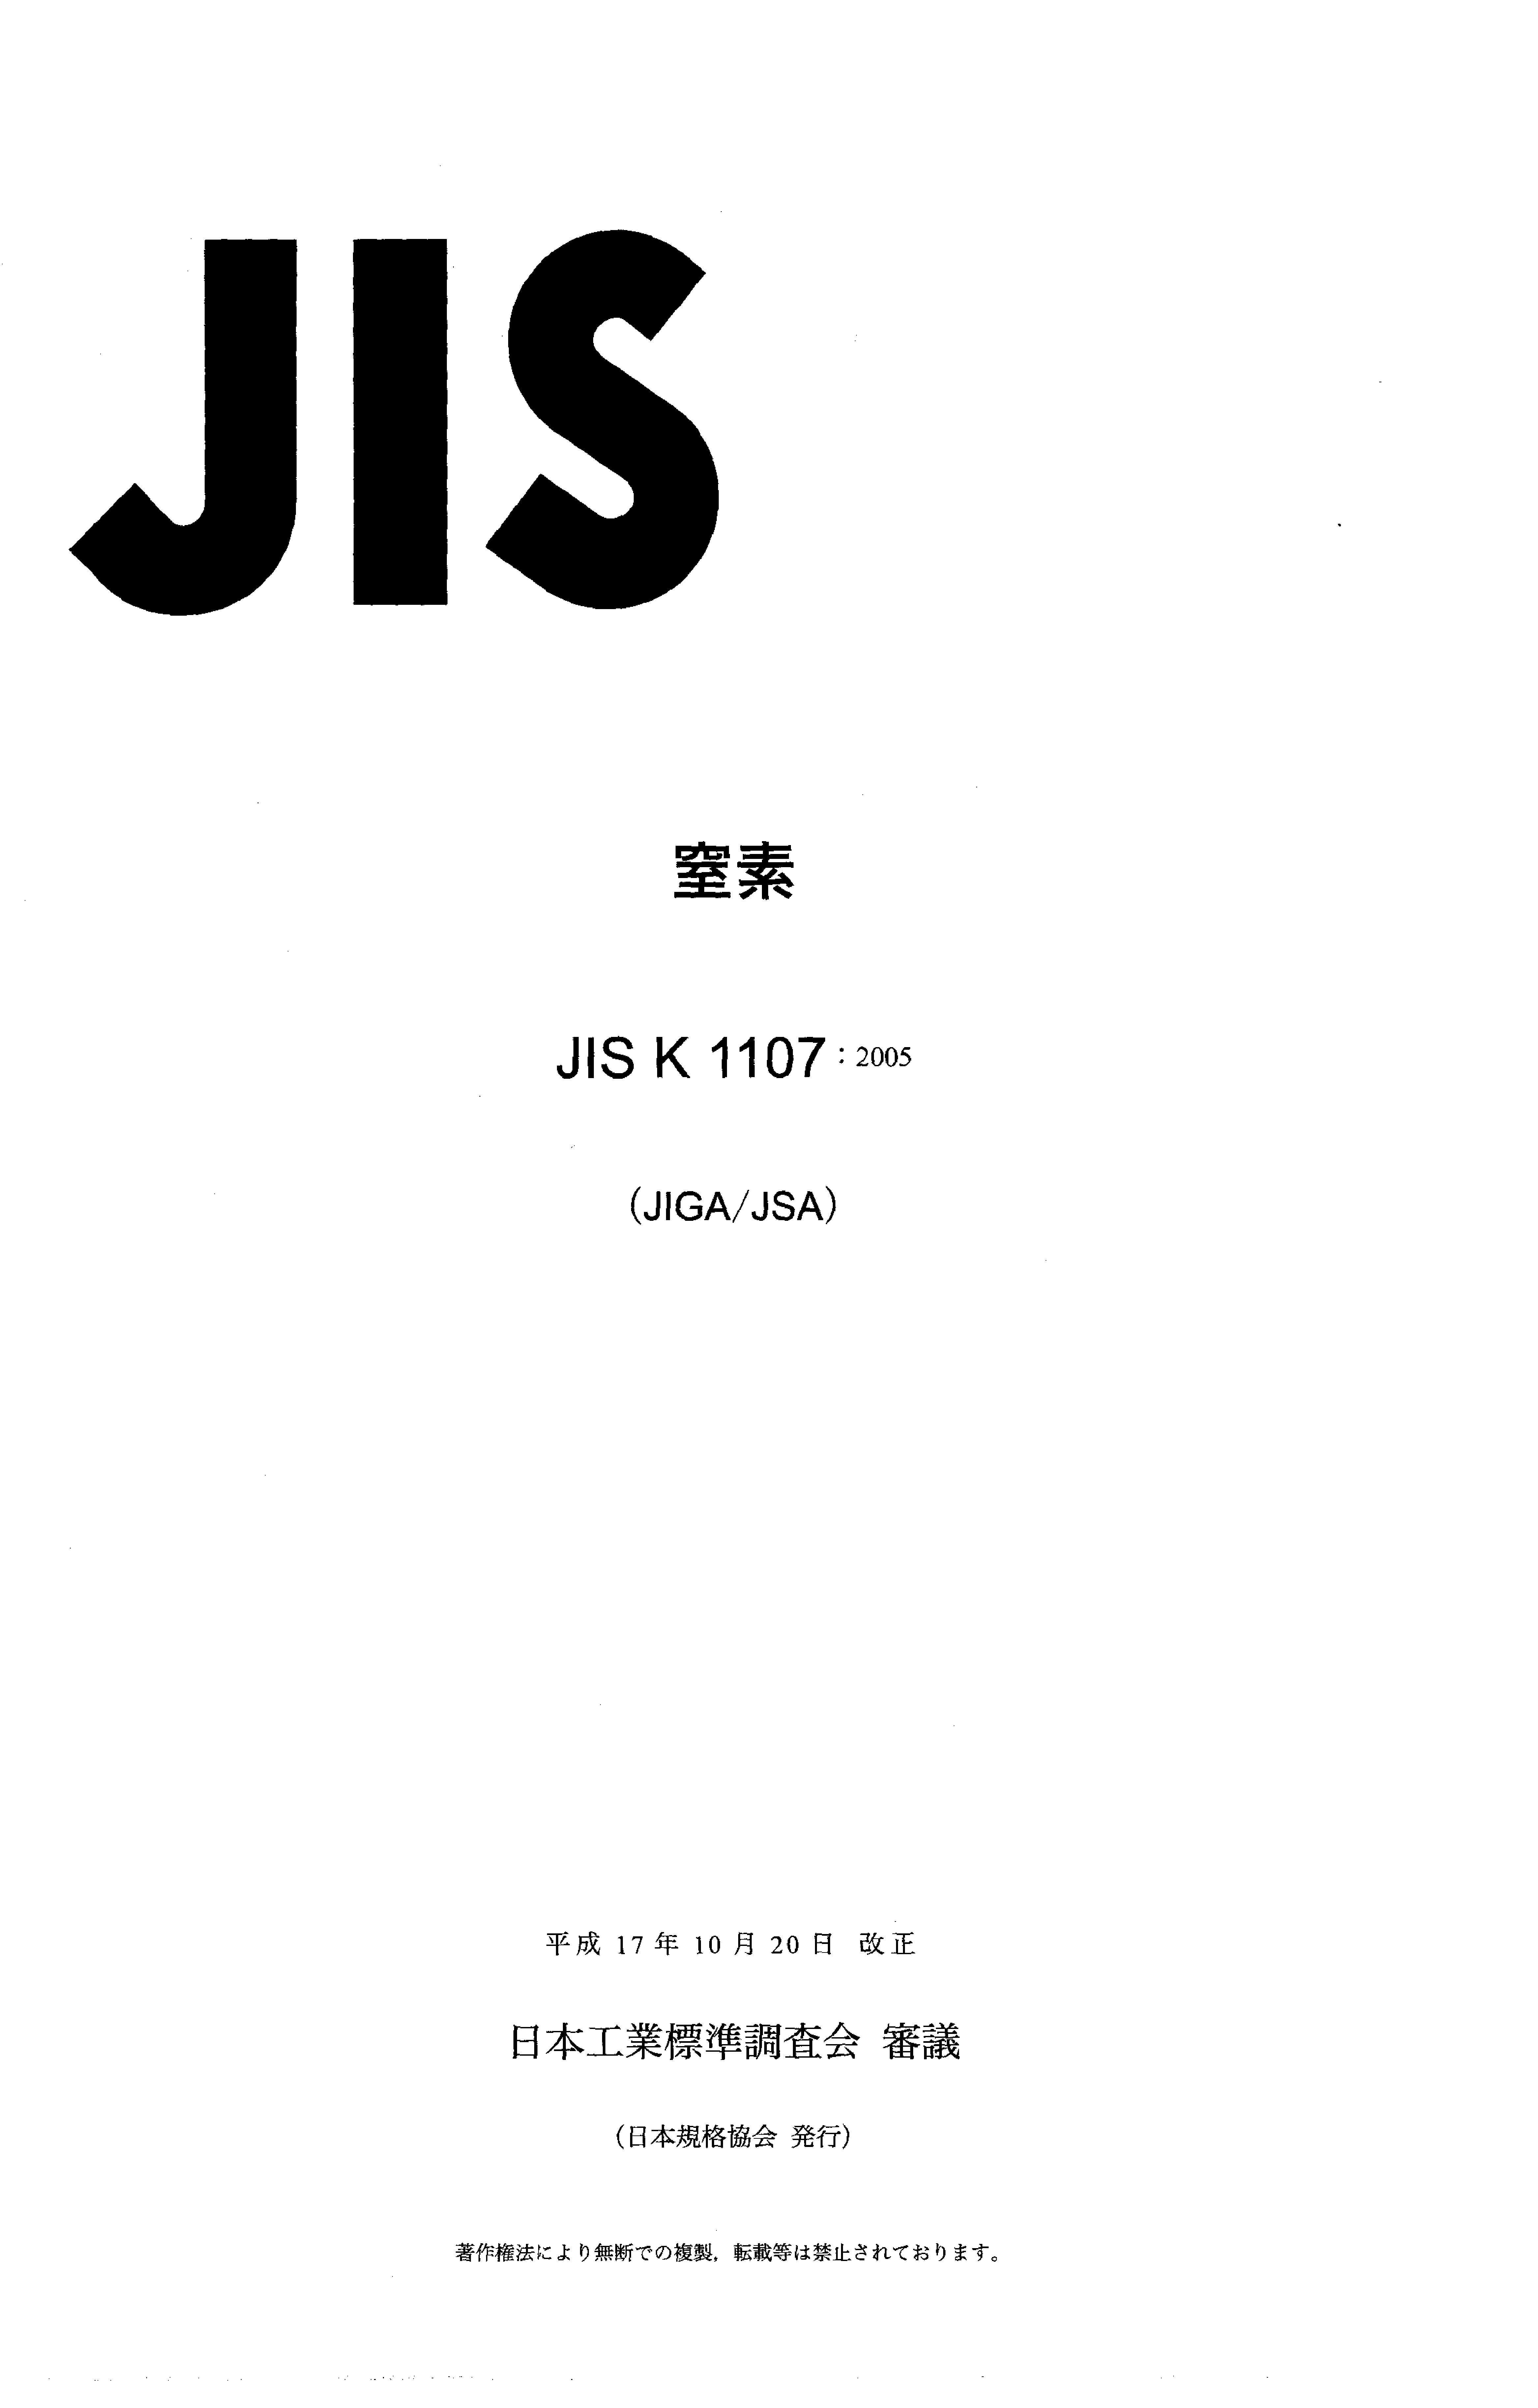 JIS K 1107:2005封面图